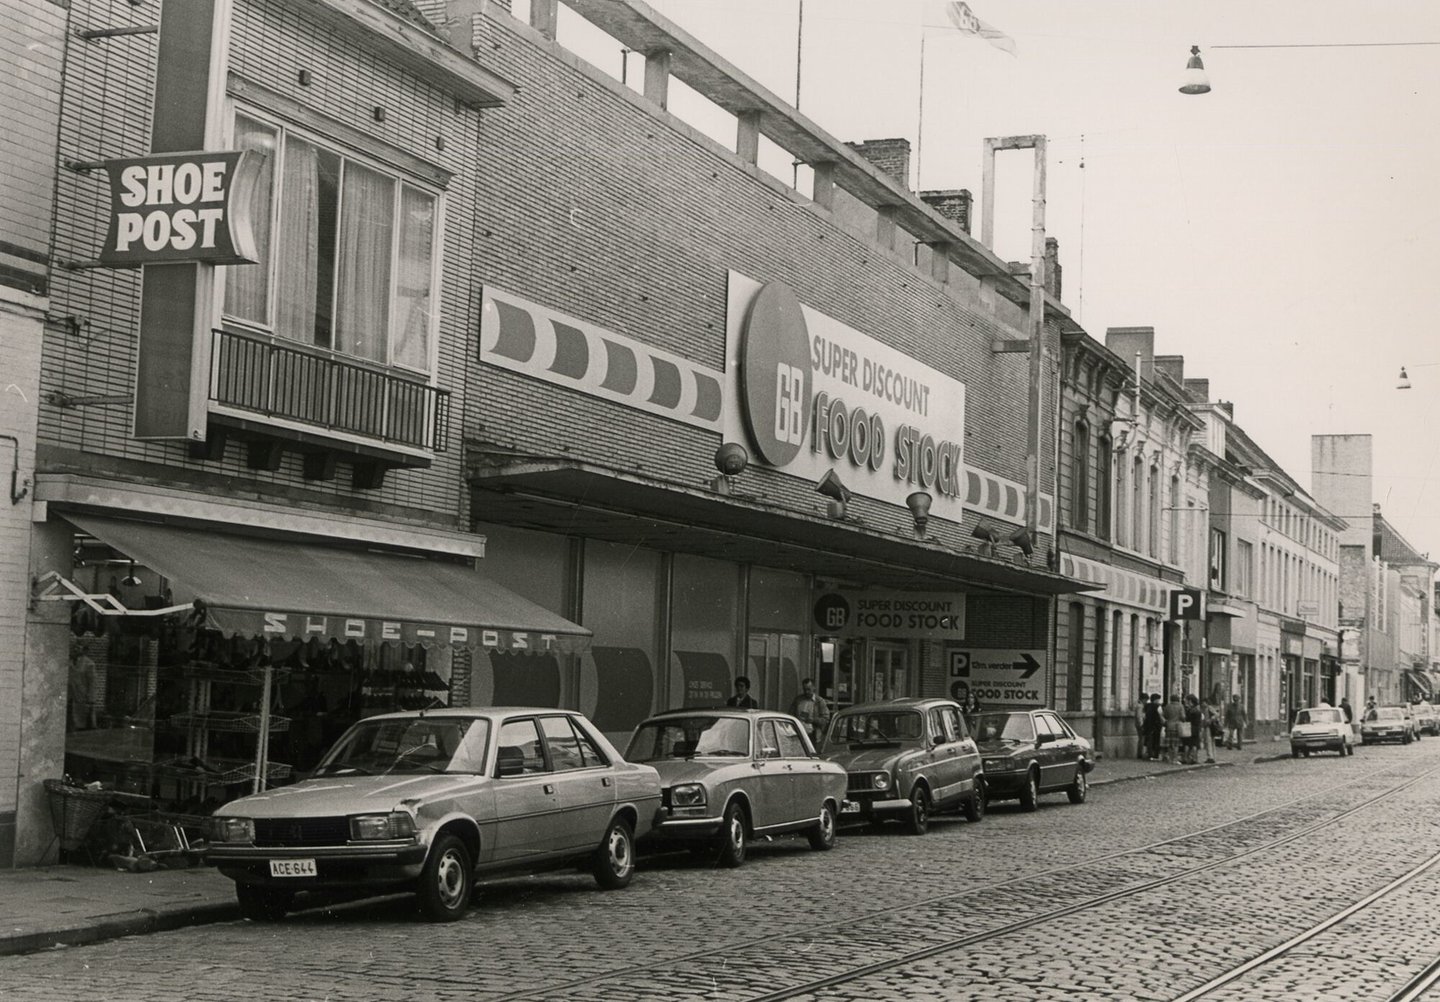 Straatbeeld met etalage van schoenwinkel Shoe Post en gevel van een GB supermarkt in Gent